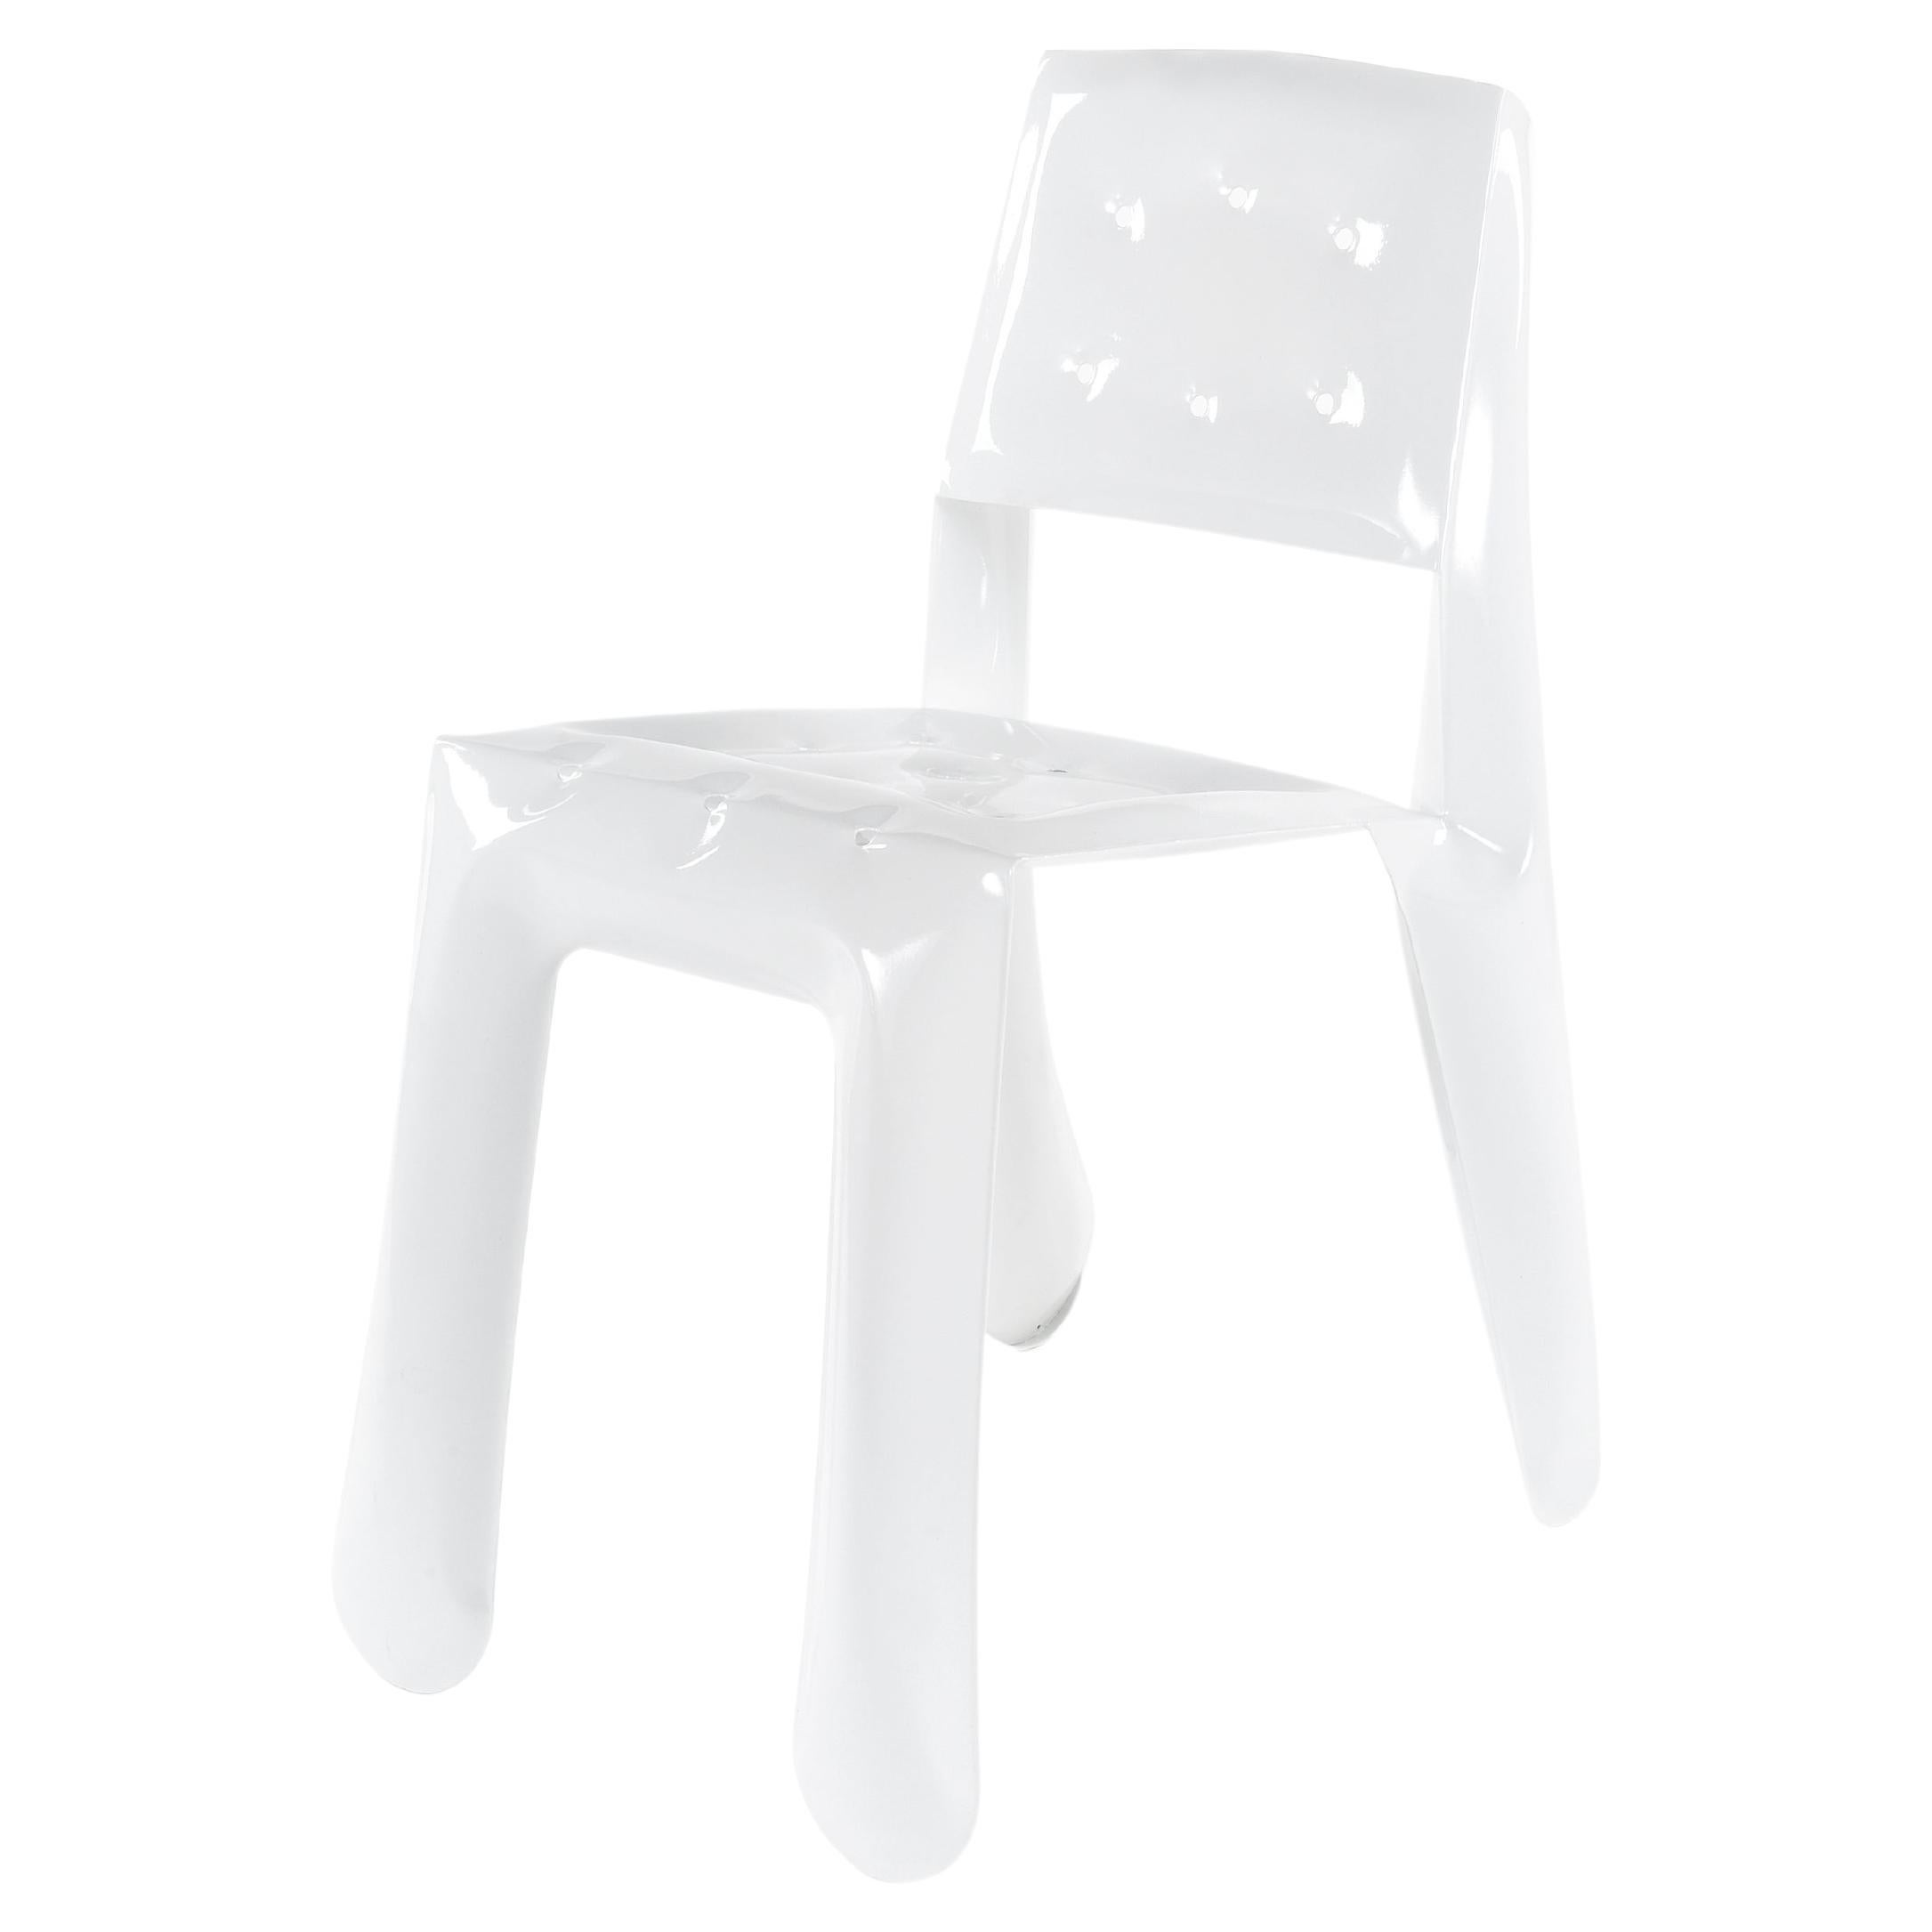 Chippensteel 0.5, Skulpturaler Stuhl aus weißem Kohlenstoffstahl von Zieta